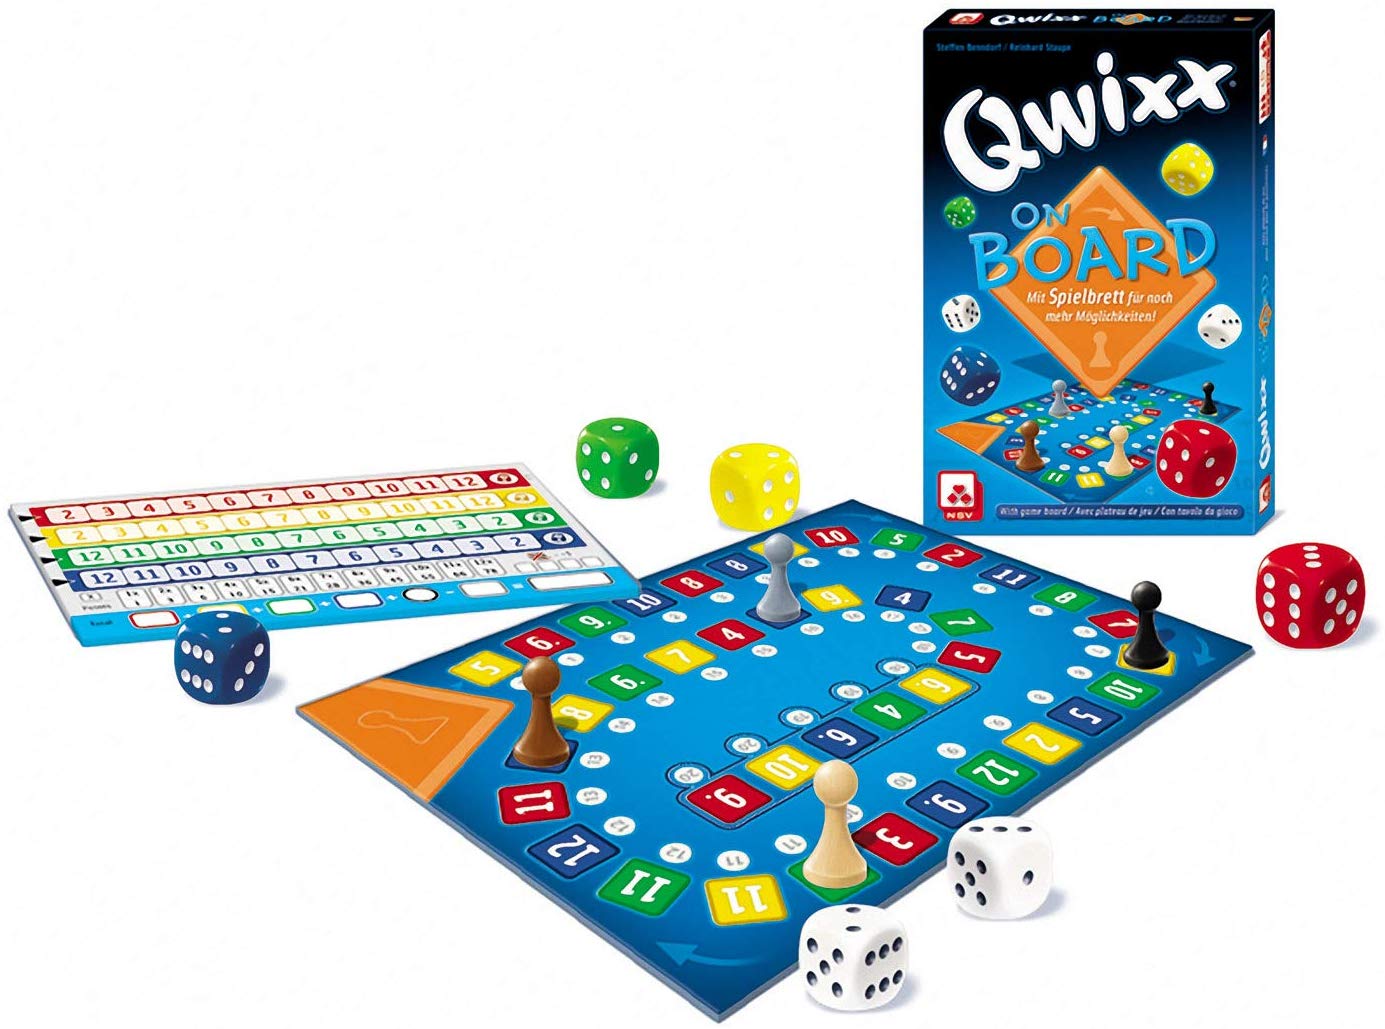 Qwixx on Board vom Nürnberger-Spielkarten-Verlag